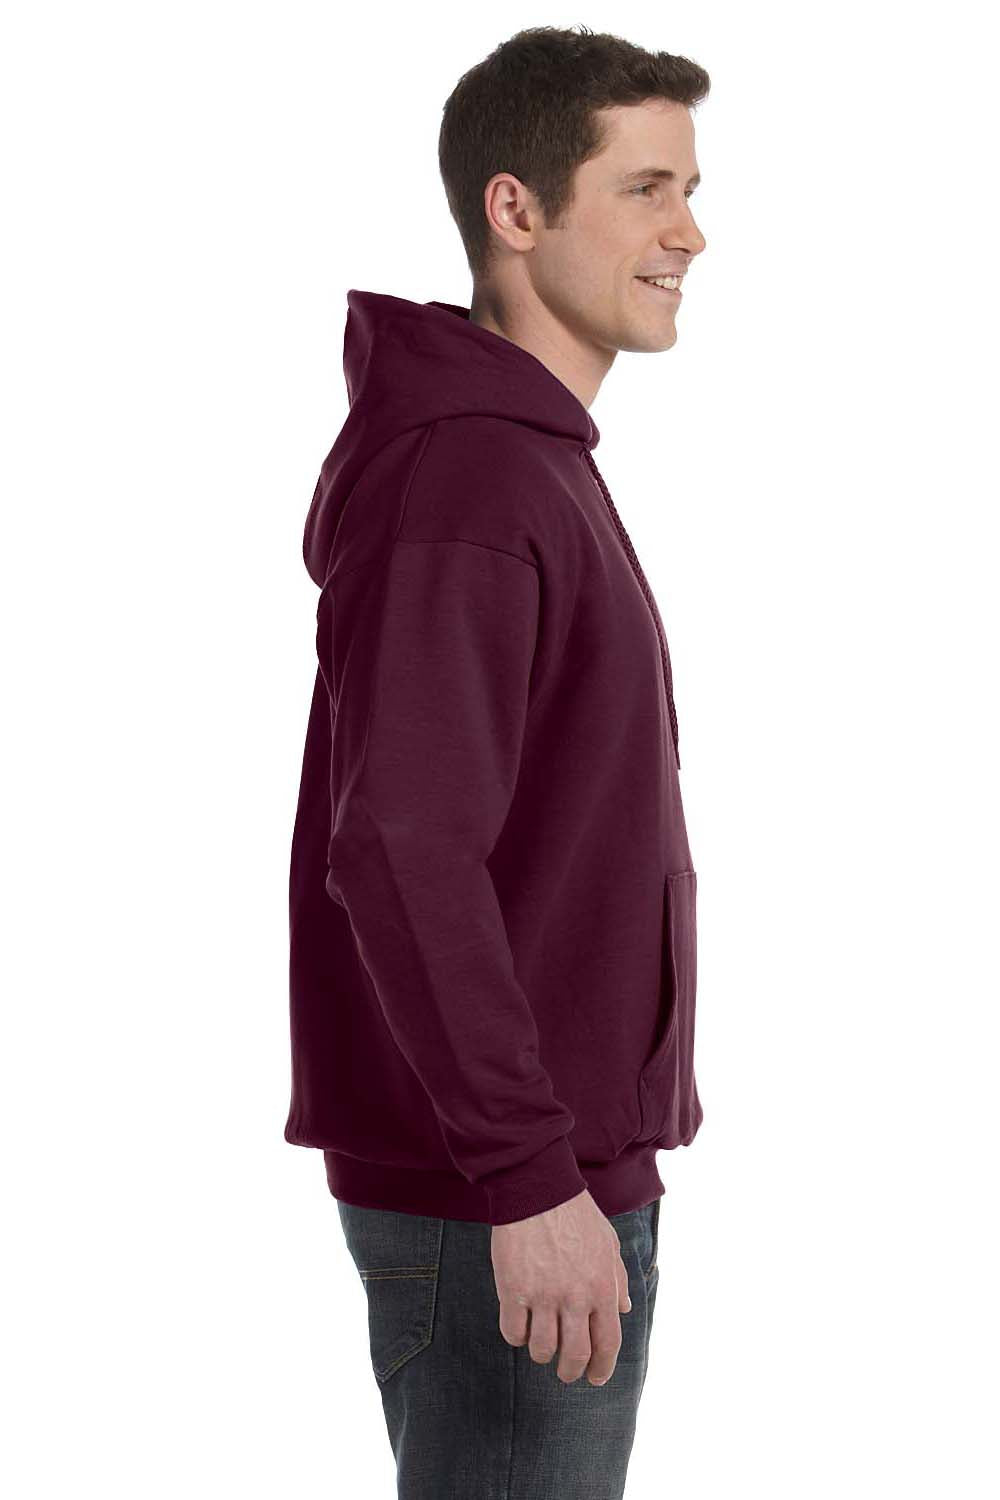 Hanes P170 Mens EcoSmart Print Pro XP Hooded Sweatshirt Hoodie Maroon Side